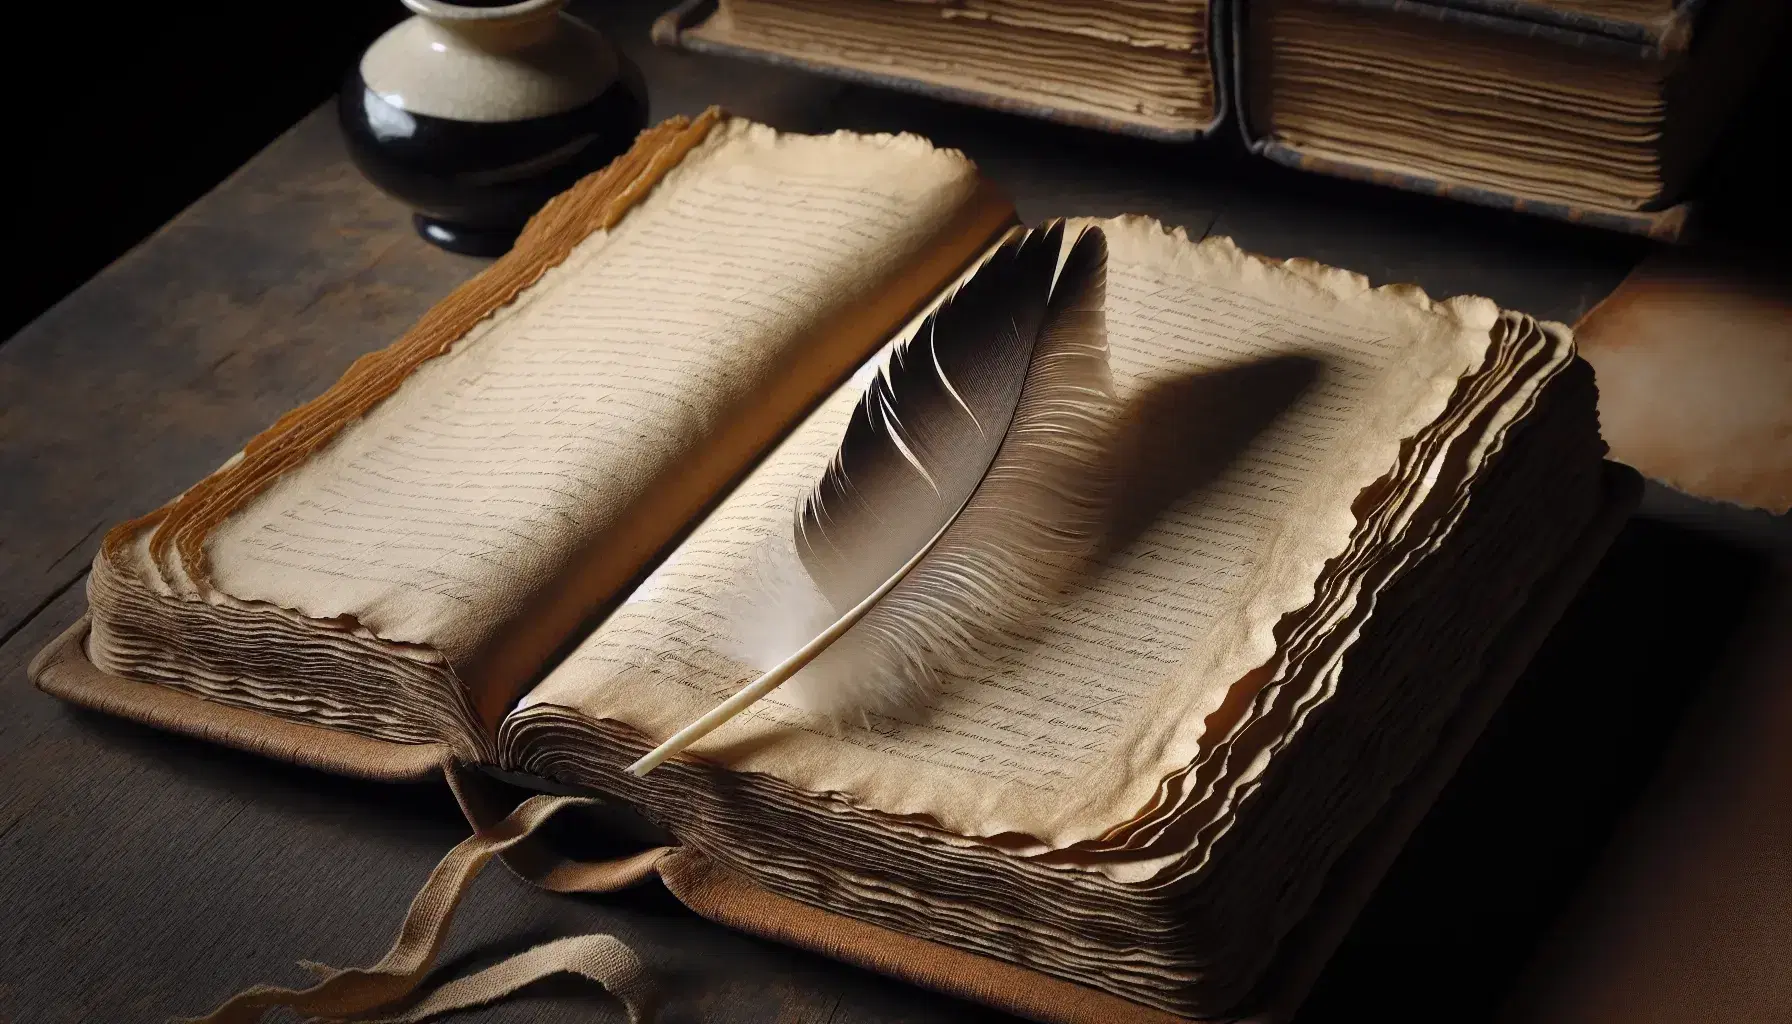 Libro antiguo abierto sobre mesa de madera oscura con páginas amarillentas y pluma de ave, acompañado de un tintero de porcelana en segundo plano.